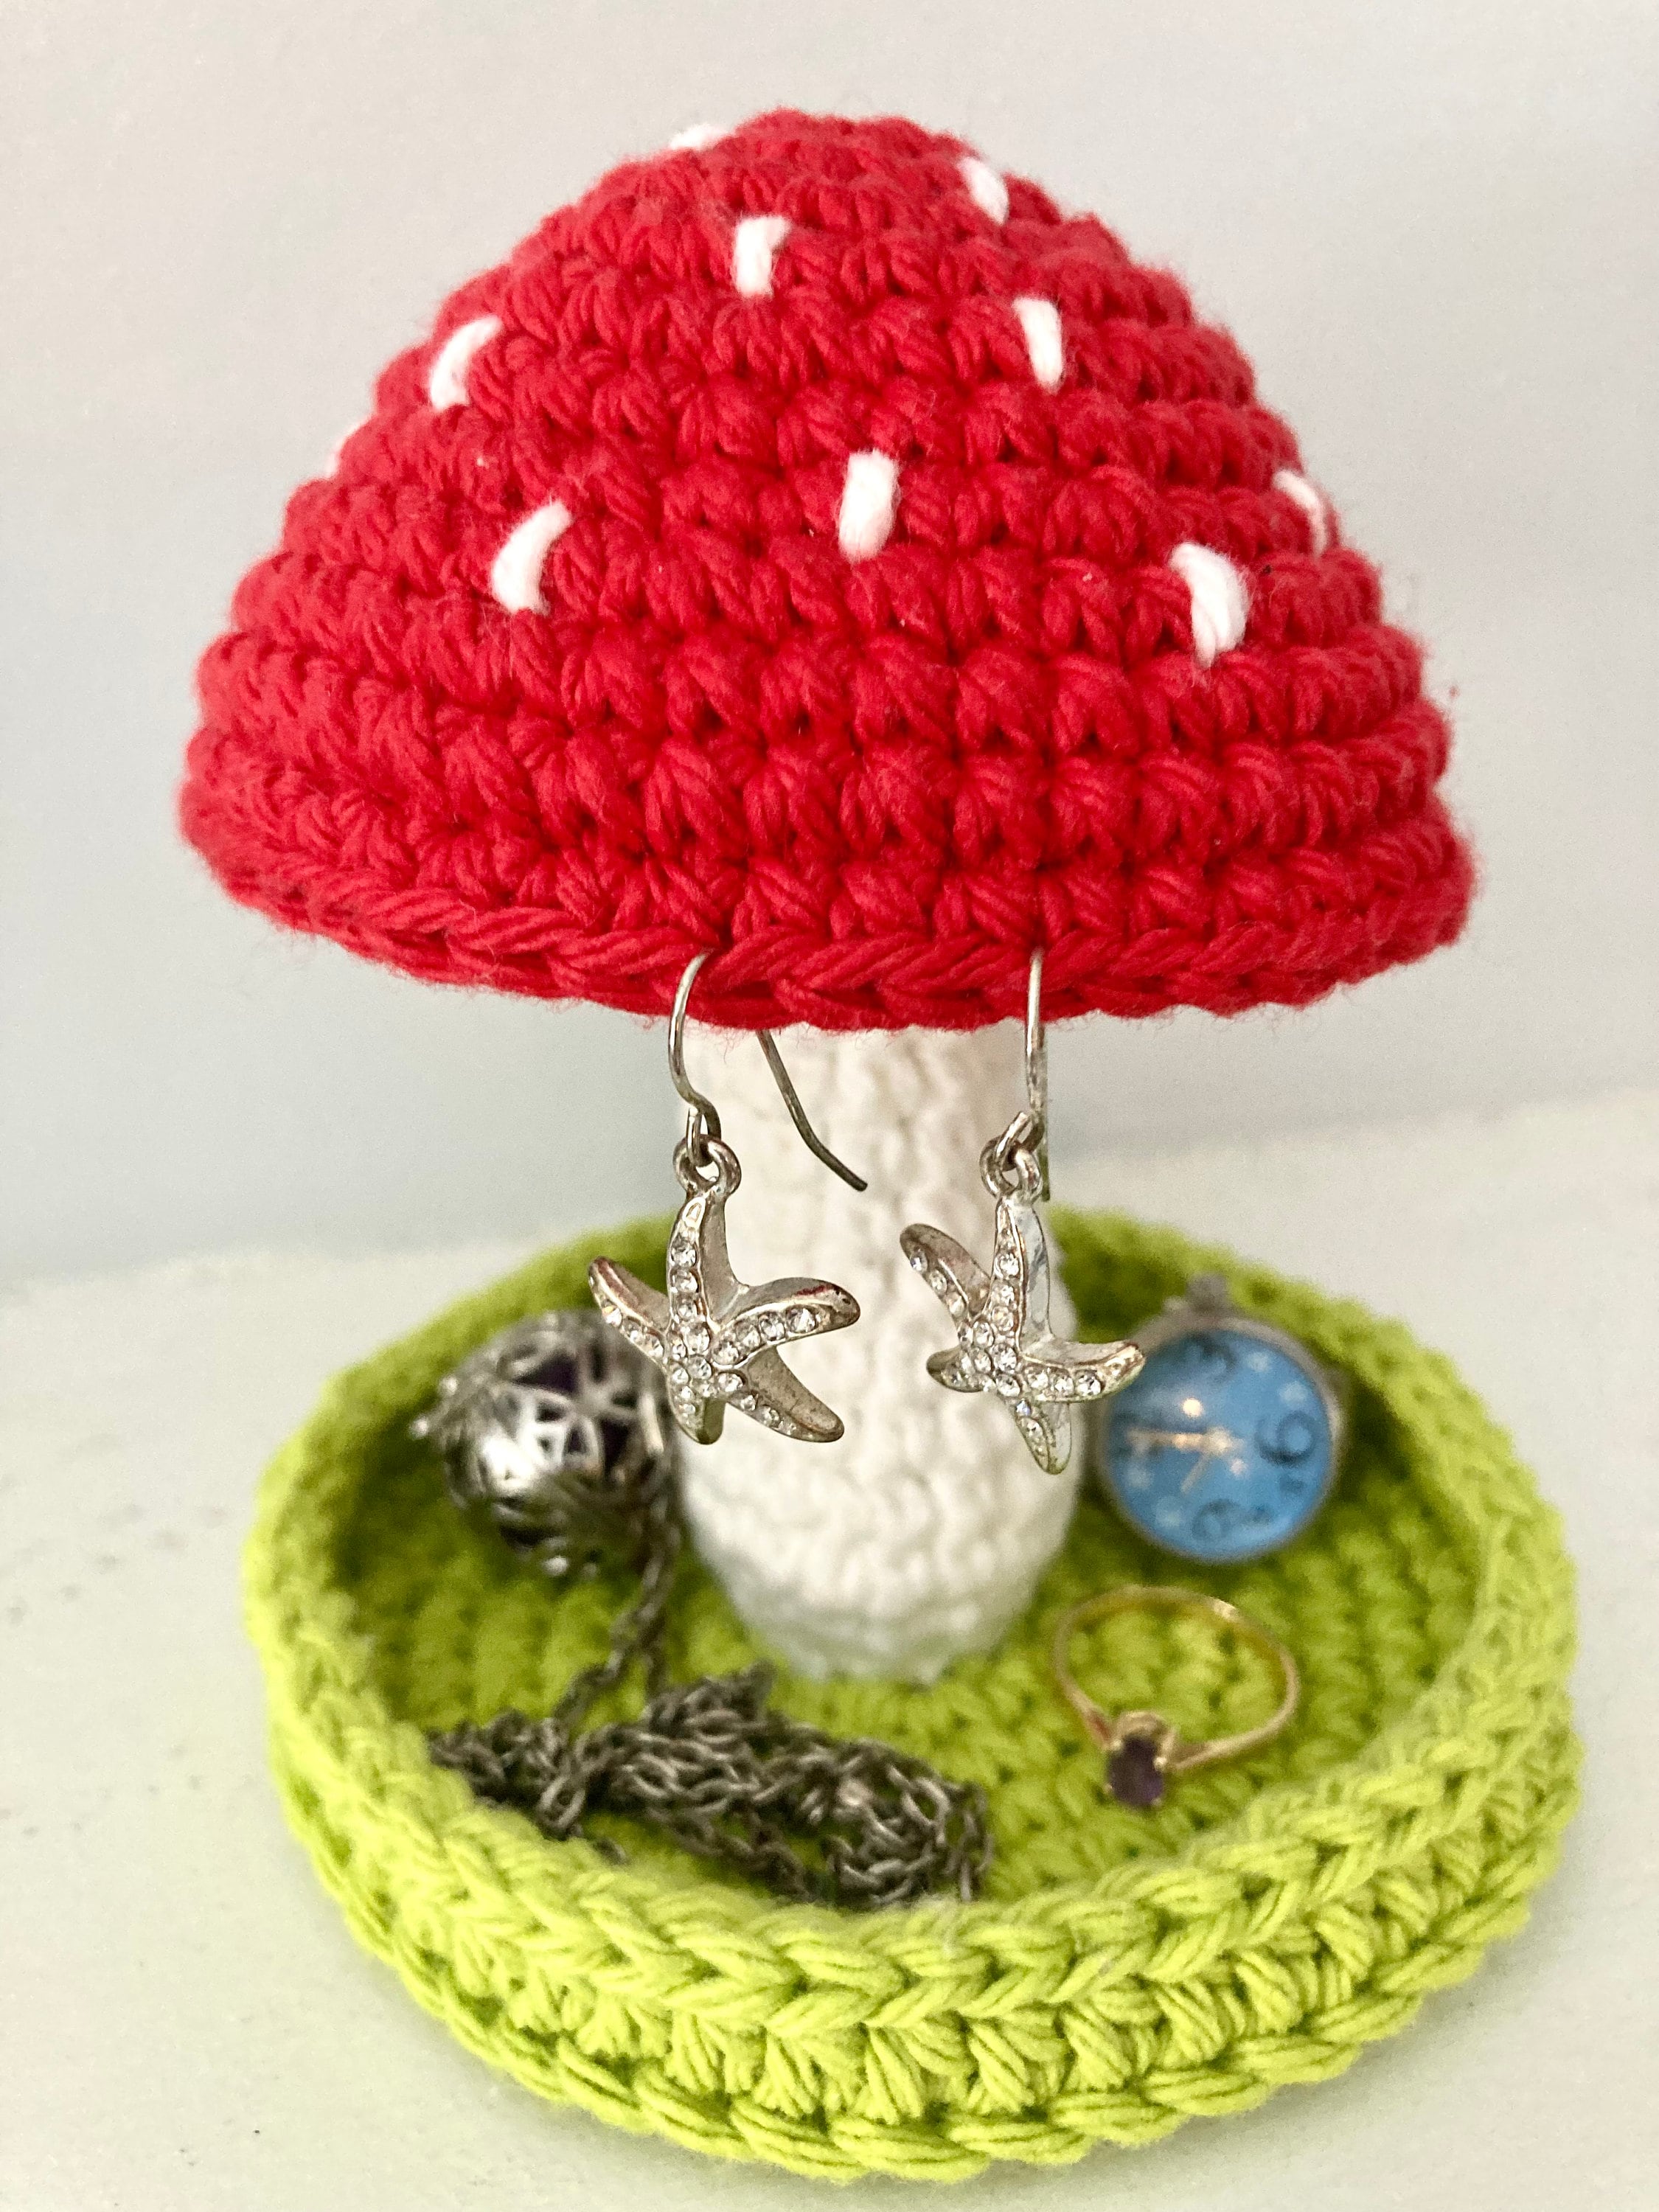 Beginner Crochet Kit for Kids, Mushroom Crochet Kit, Crochet Starter Kit  for Beg 7445000946966